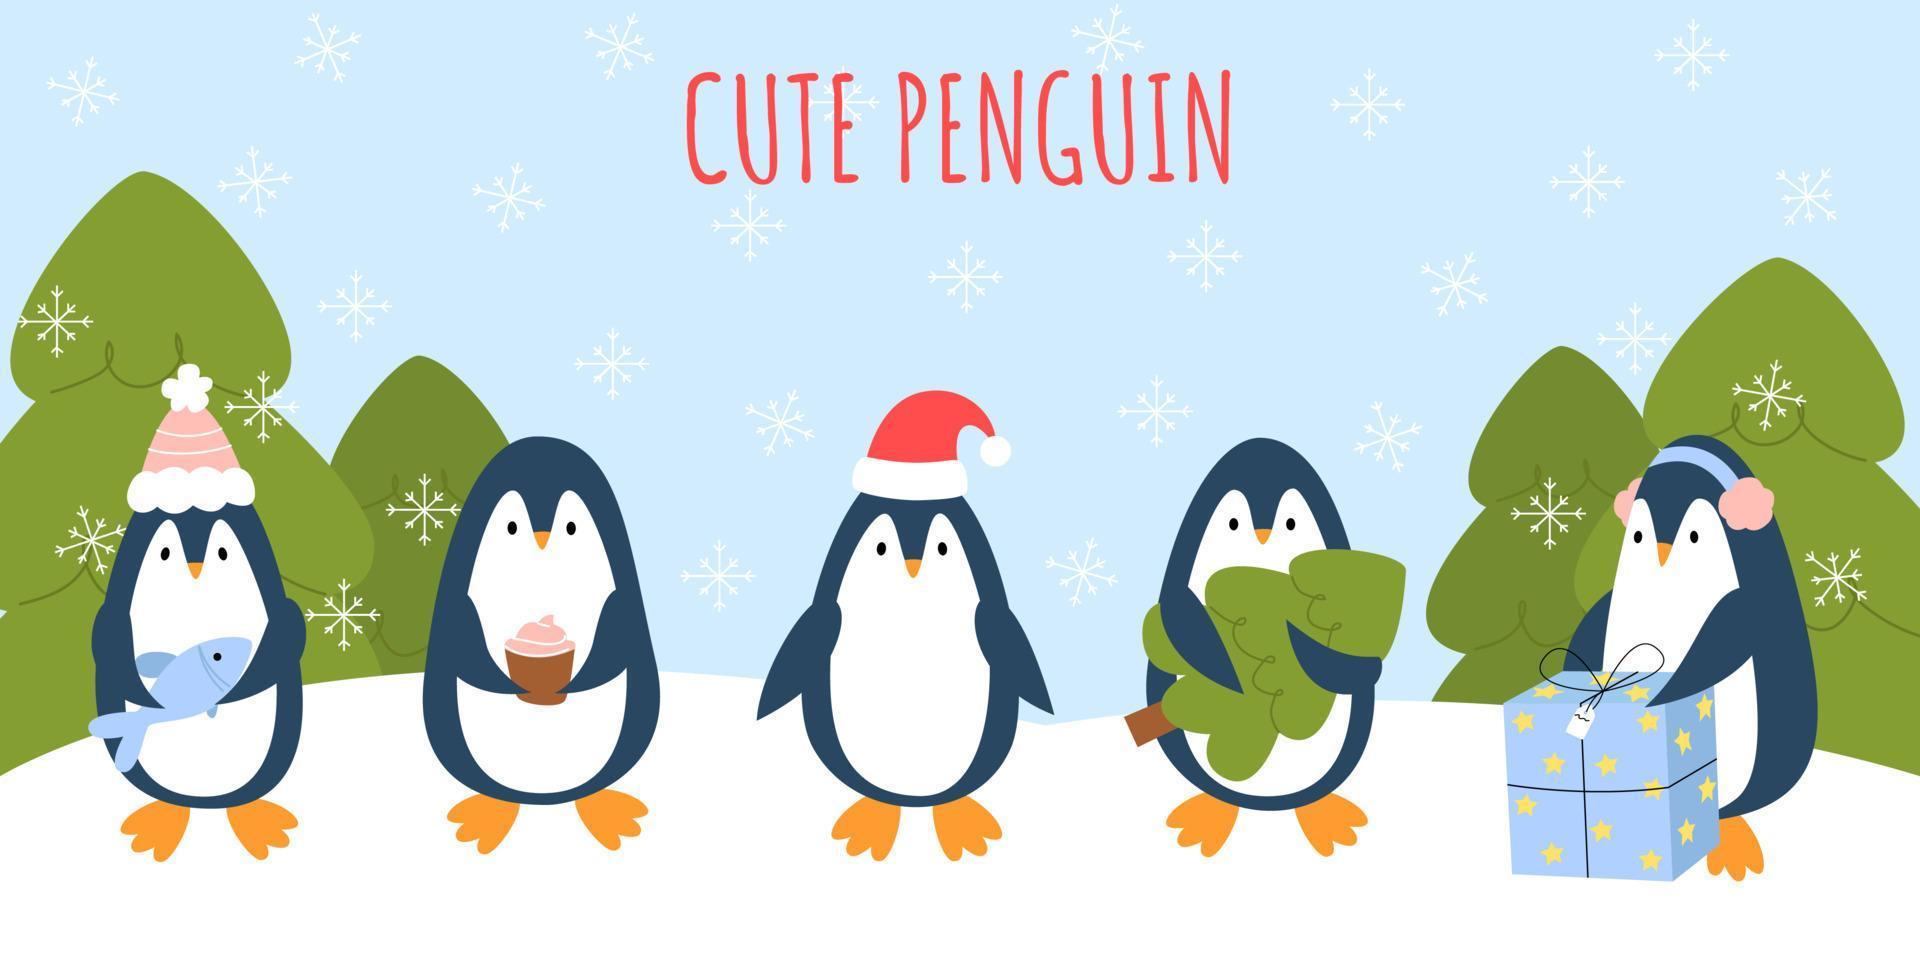 set söta pingviner med vinter, jul och nyår element. roliga djur för kort, affisch, broschyr, sida, banner. text söt pingvin. vektor illustration i tecknad stil med bakgrund.